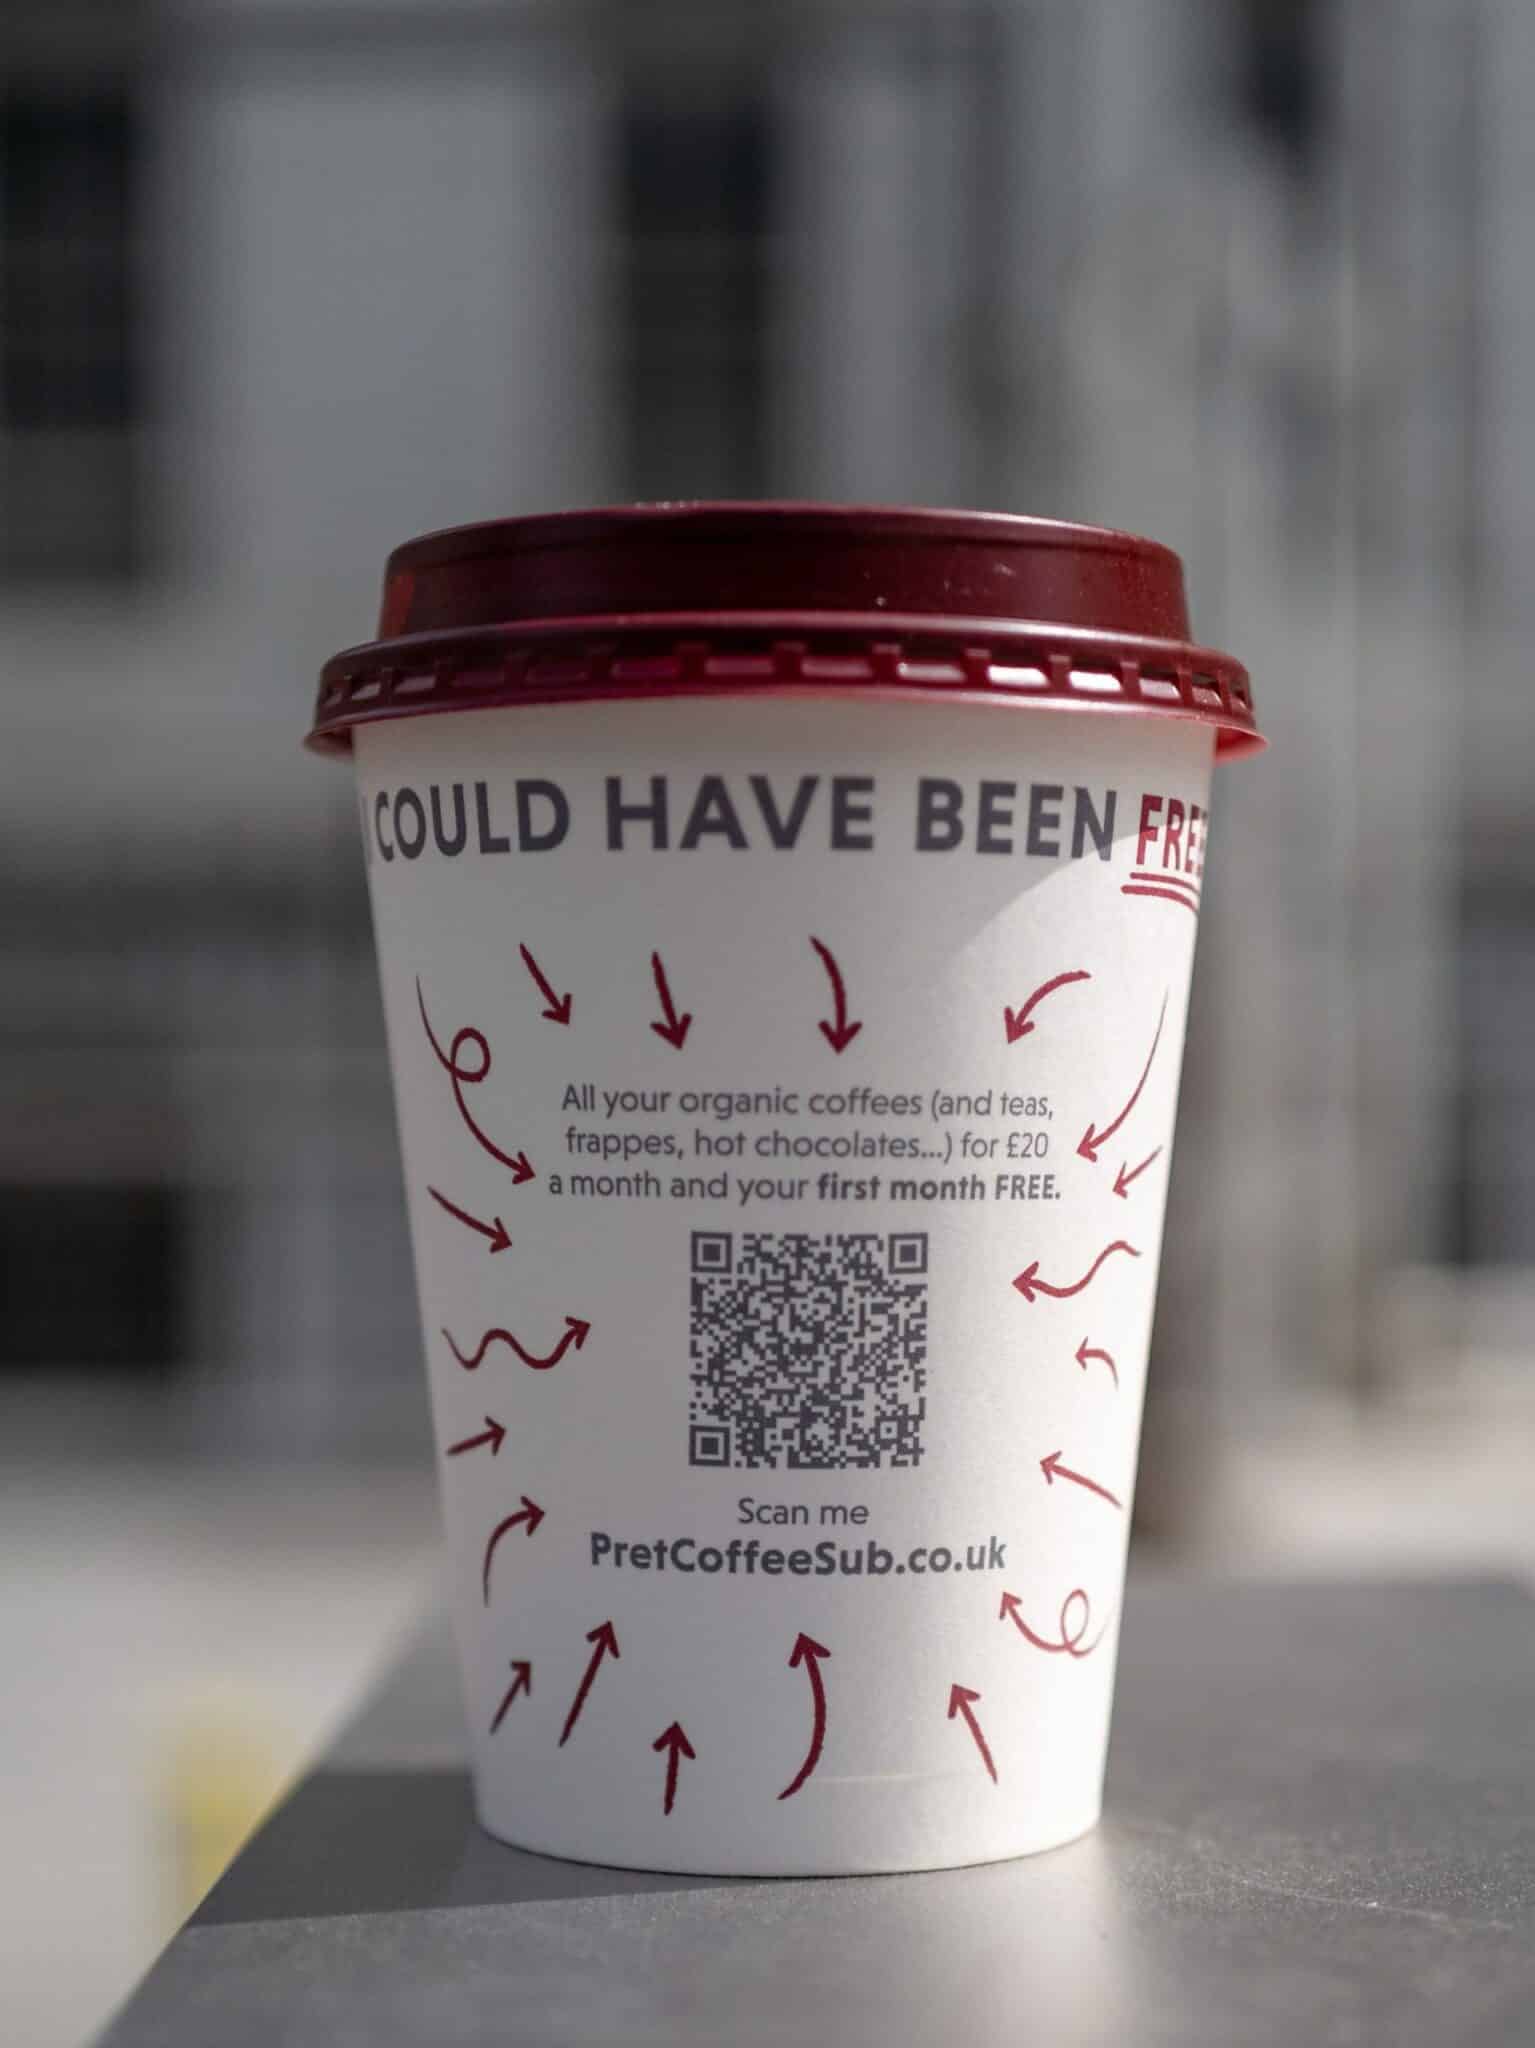 Ein Kaffeebecher mit einem QR-Code zum scannen darauf.